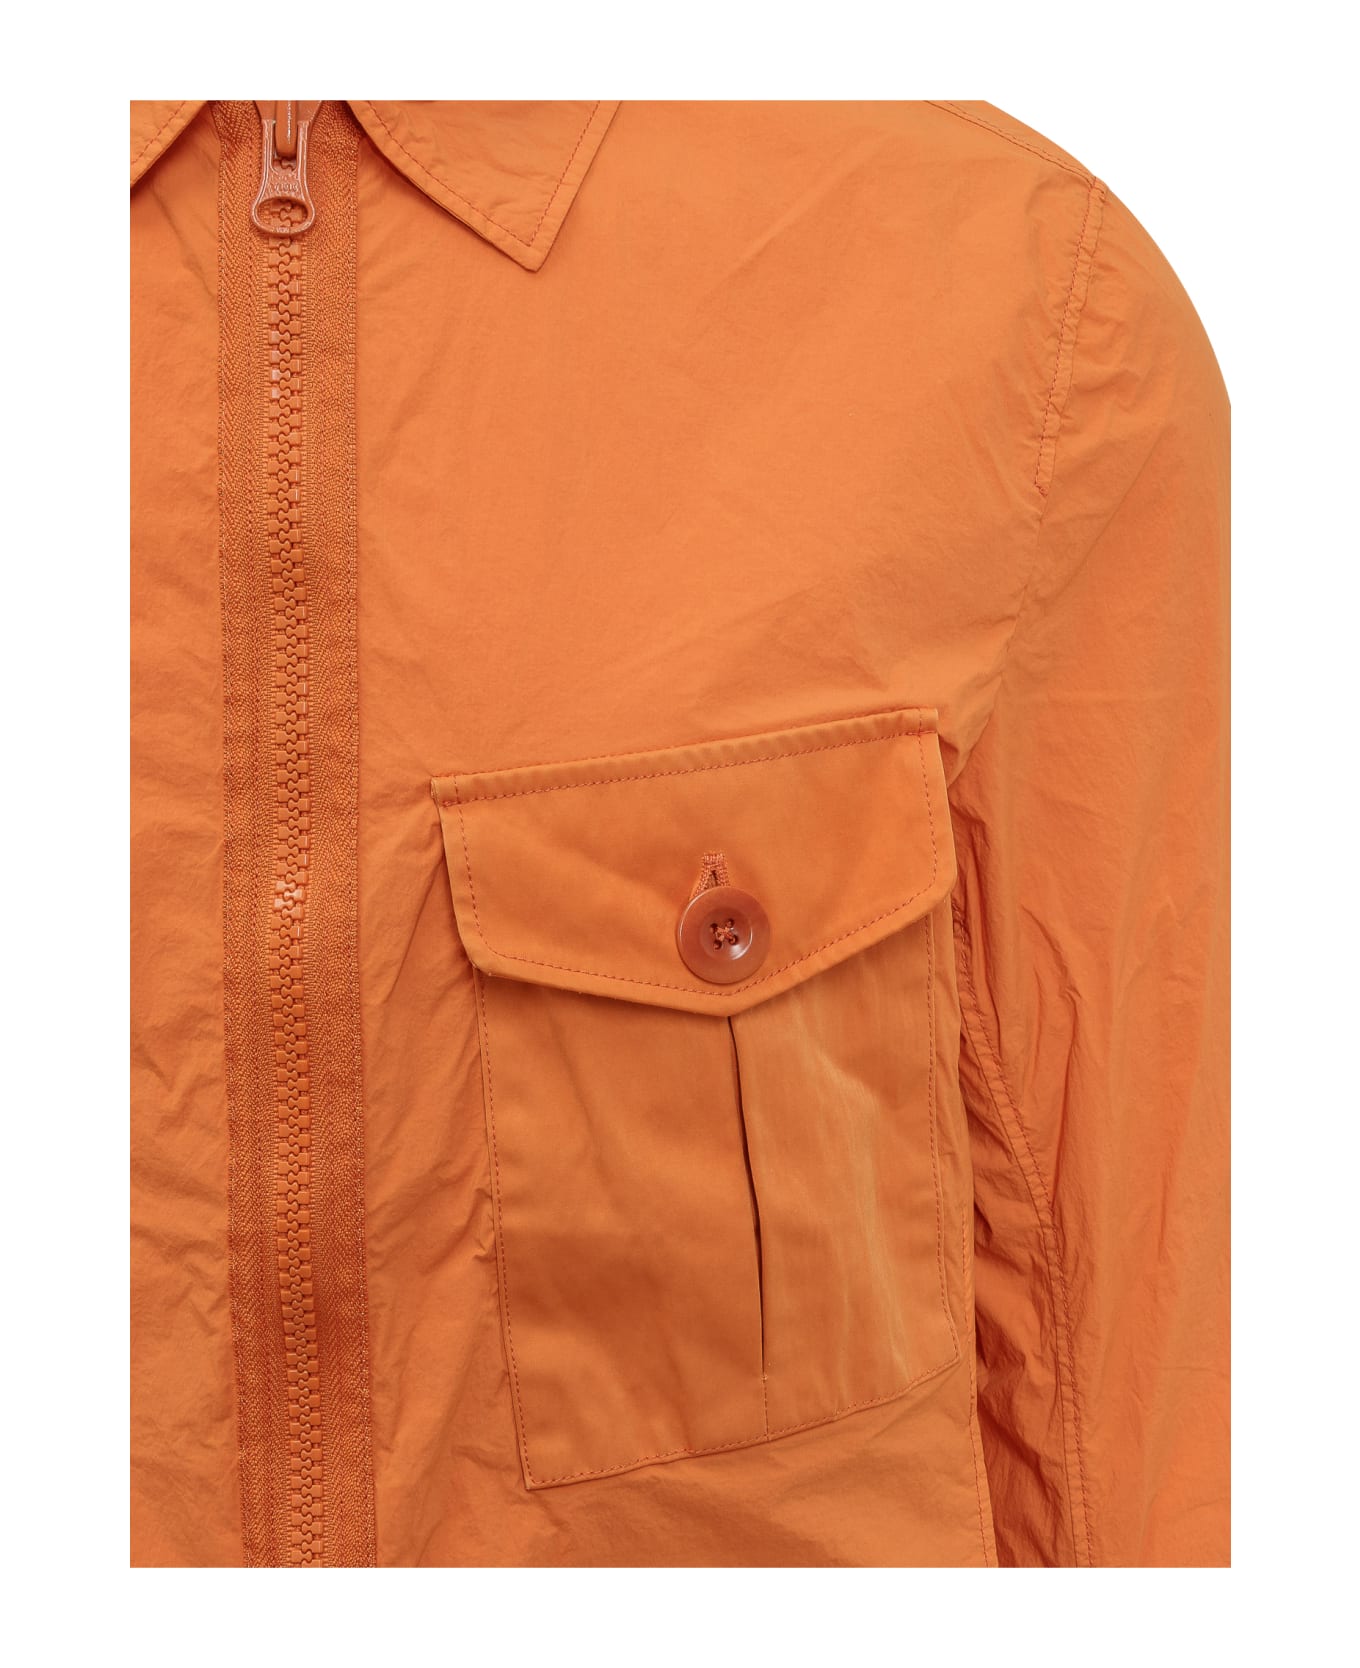 Ten C Shirt Jacket - ARANCIONE/PESCA